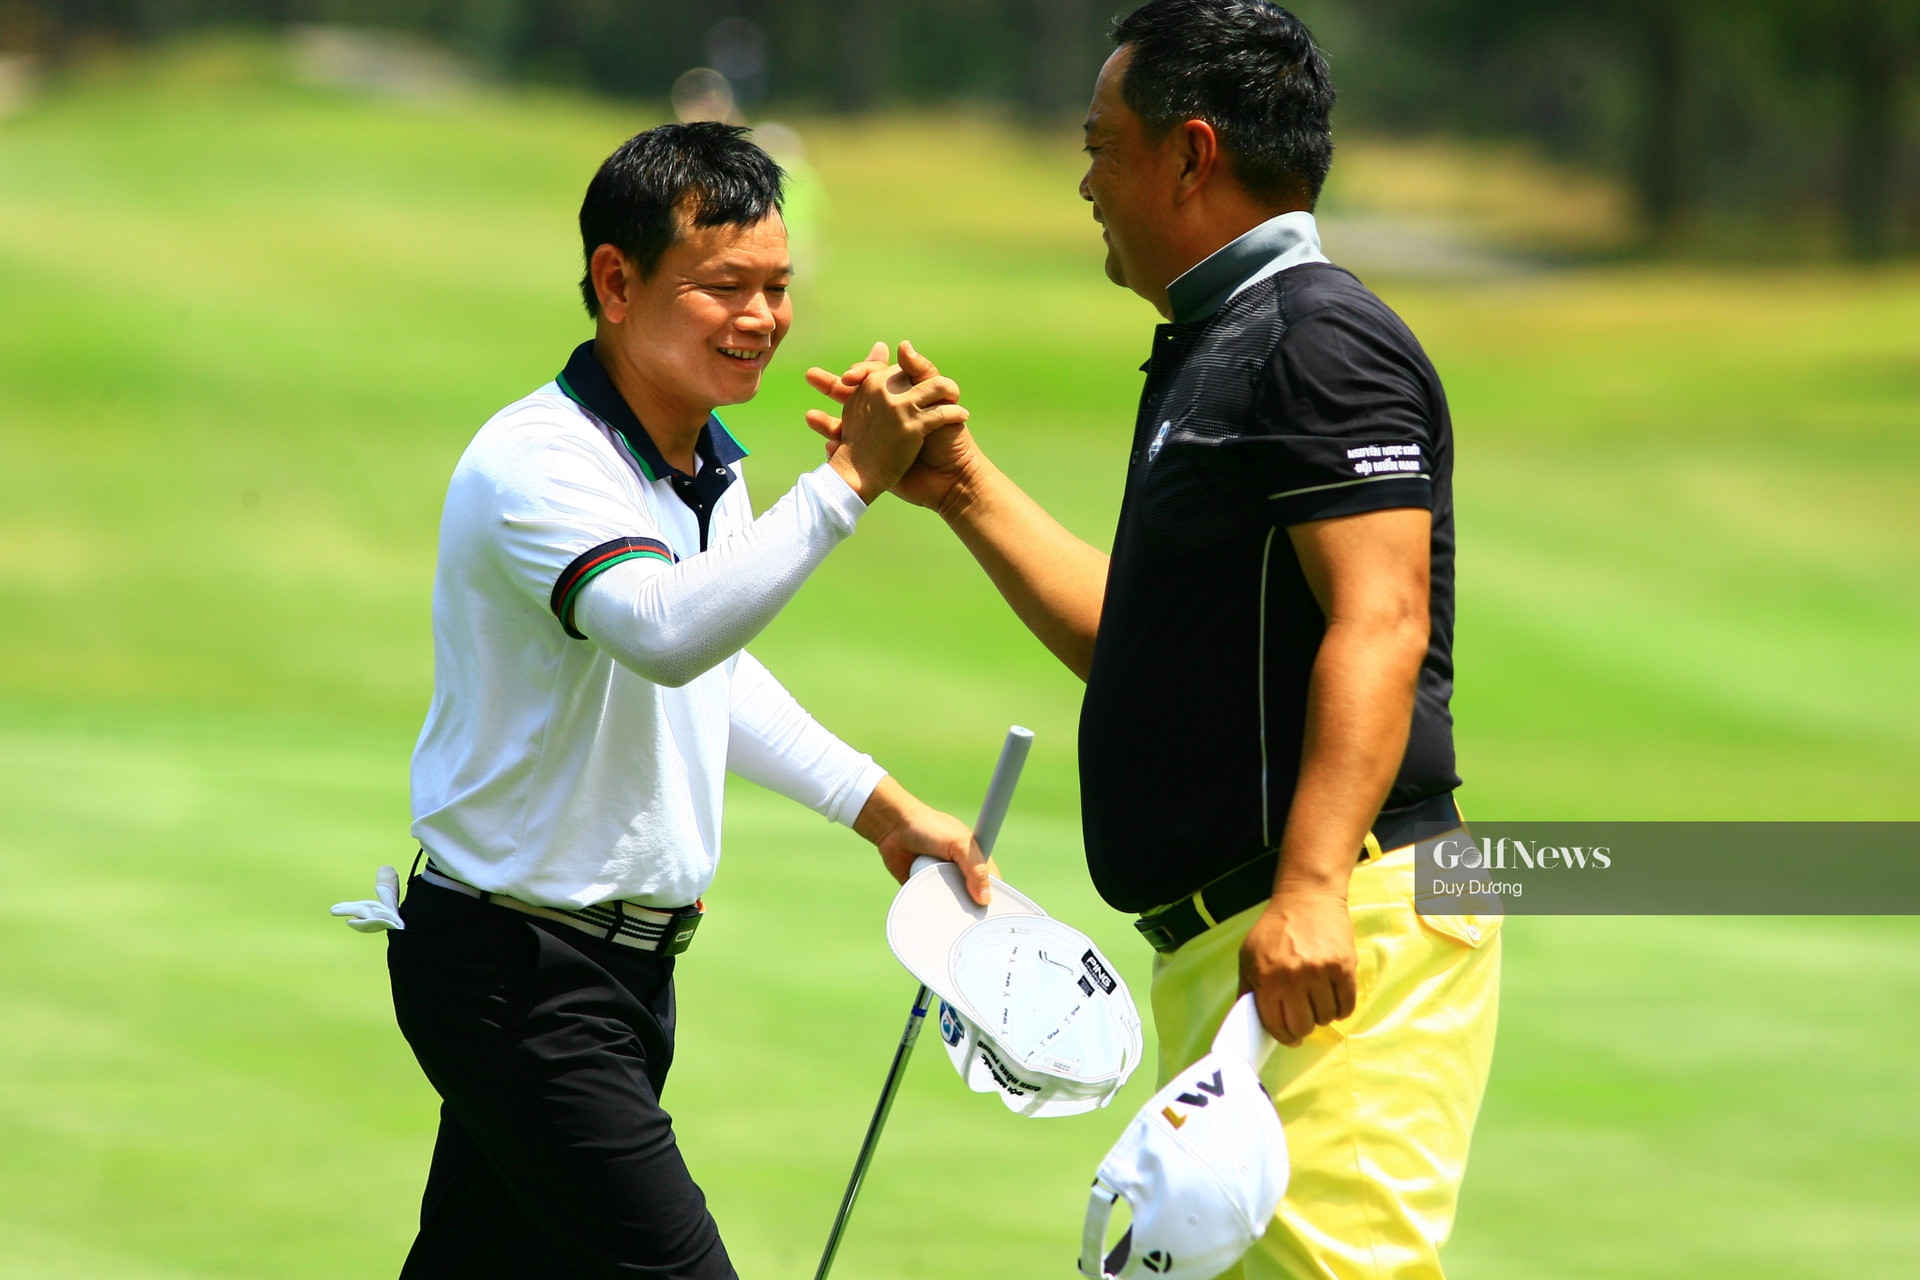 VGA Union Cup 2021: Golfer Đinh Hồng Phong được chọn làm Đội trưởng tuyển miền Bắc - Ảnh 1.